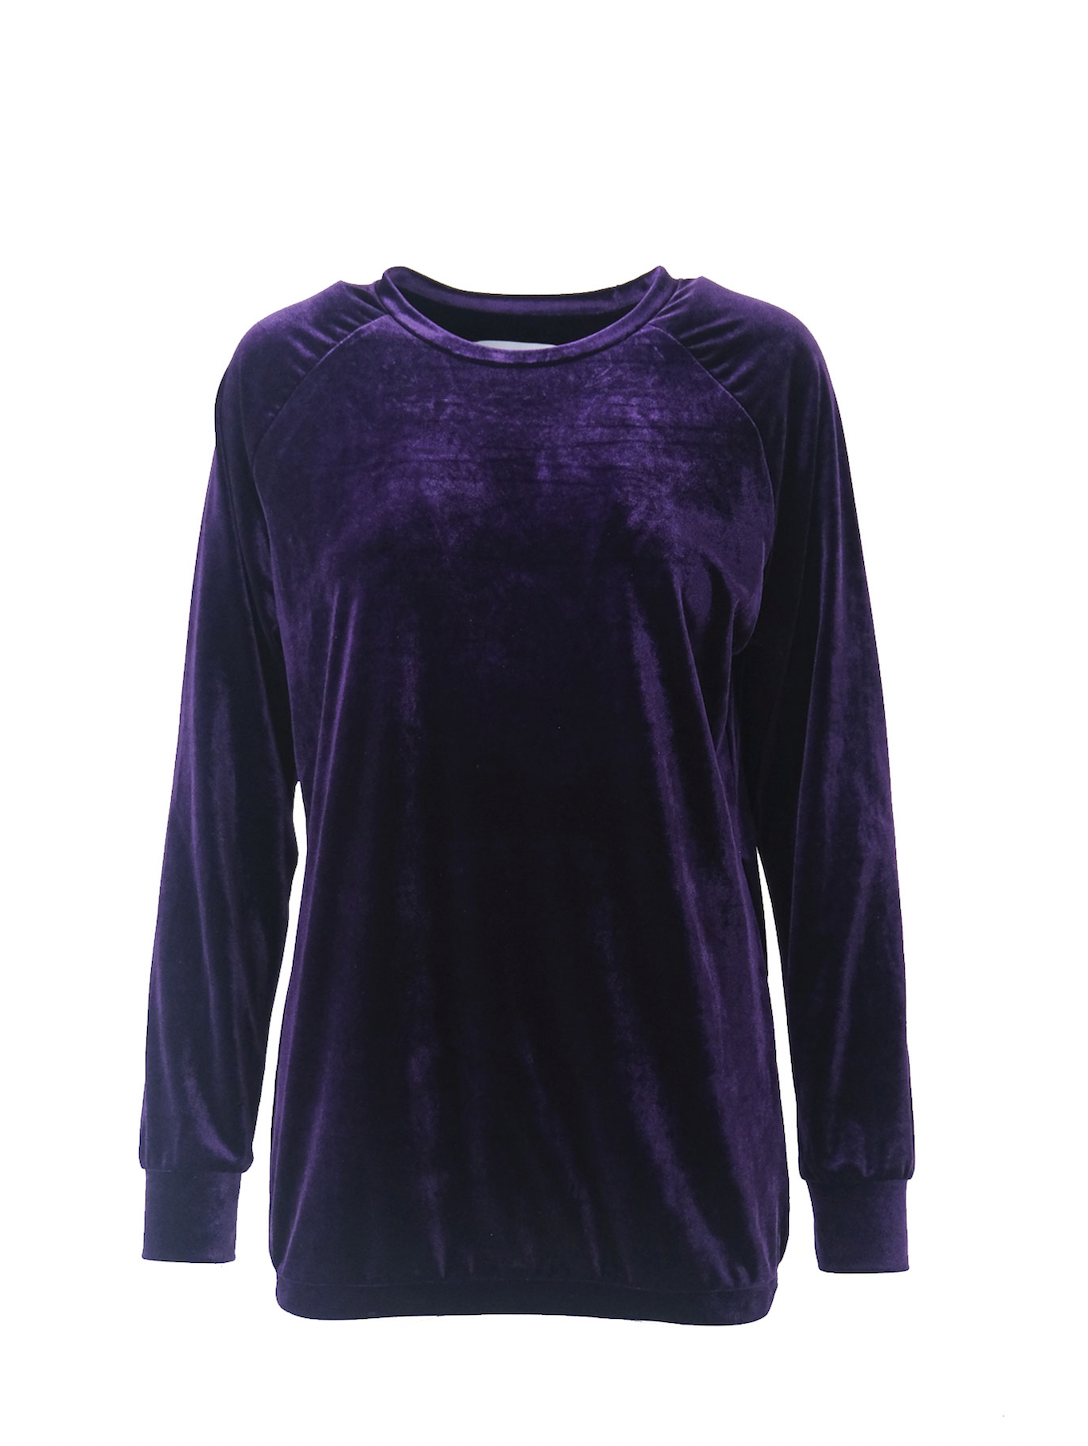 FLORA - round-necked sweatshirt in purple chenille